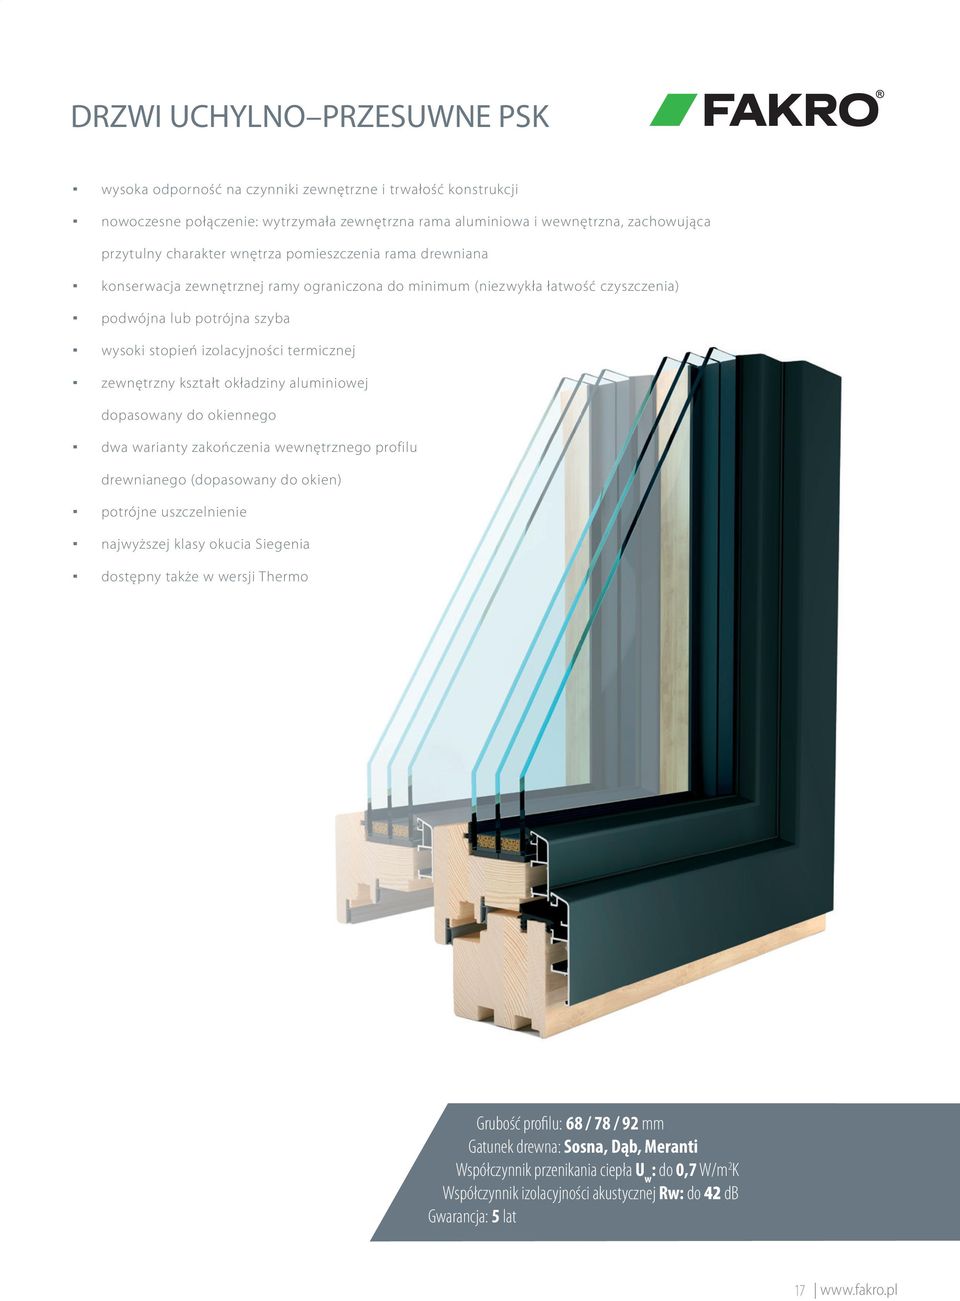 kształt okładziny aluminiowej dopasowany do okiennego dwa warianty zakończenia wewnętrznego profilu drewnianego (dopasowany do okien) potrójne uszczelnienie najwyższej klasy okucia Siegenia dostępny